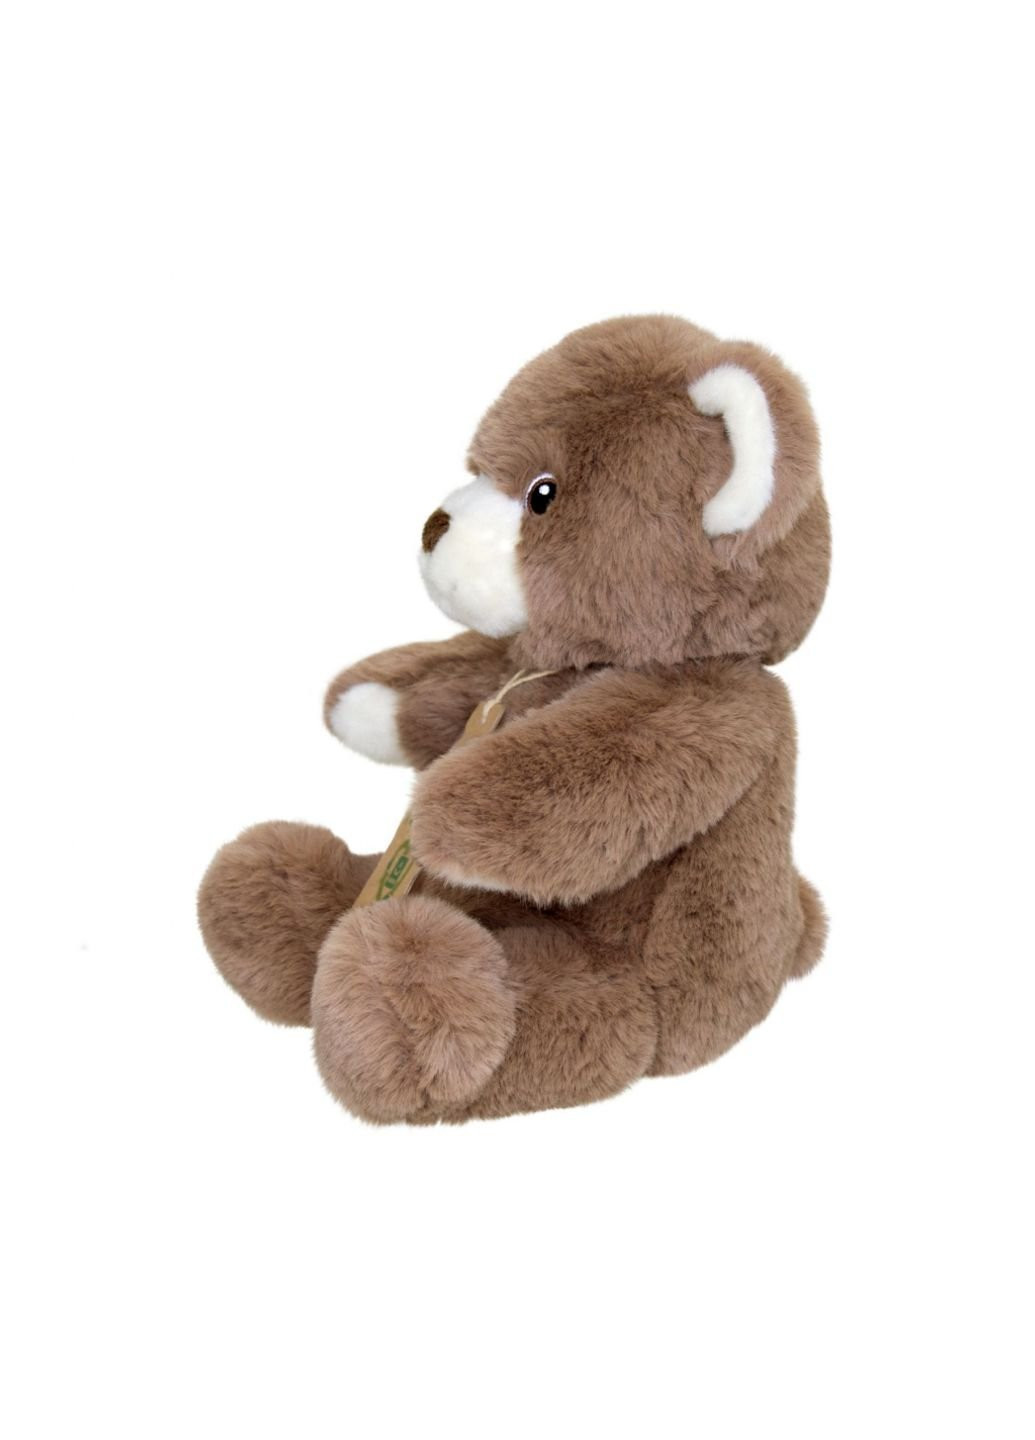 Мягкая игрушка Медведь коричневый 25 см Aurora (252250006)